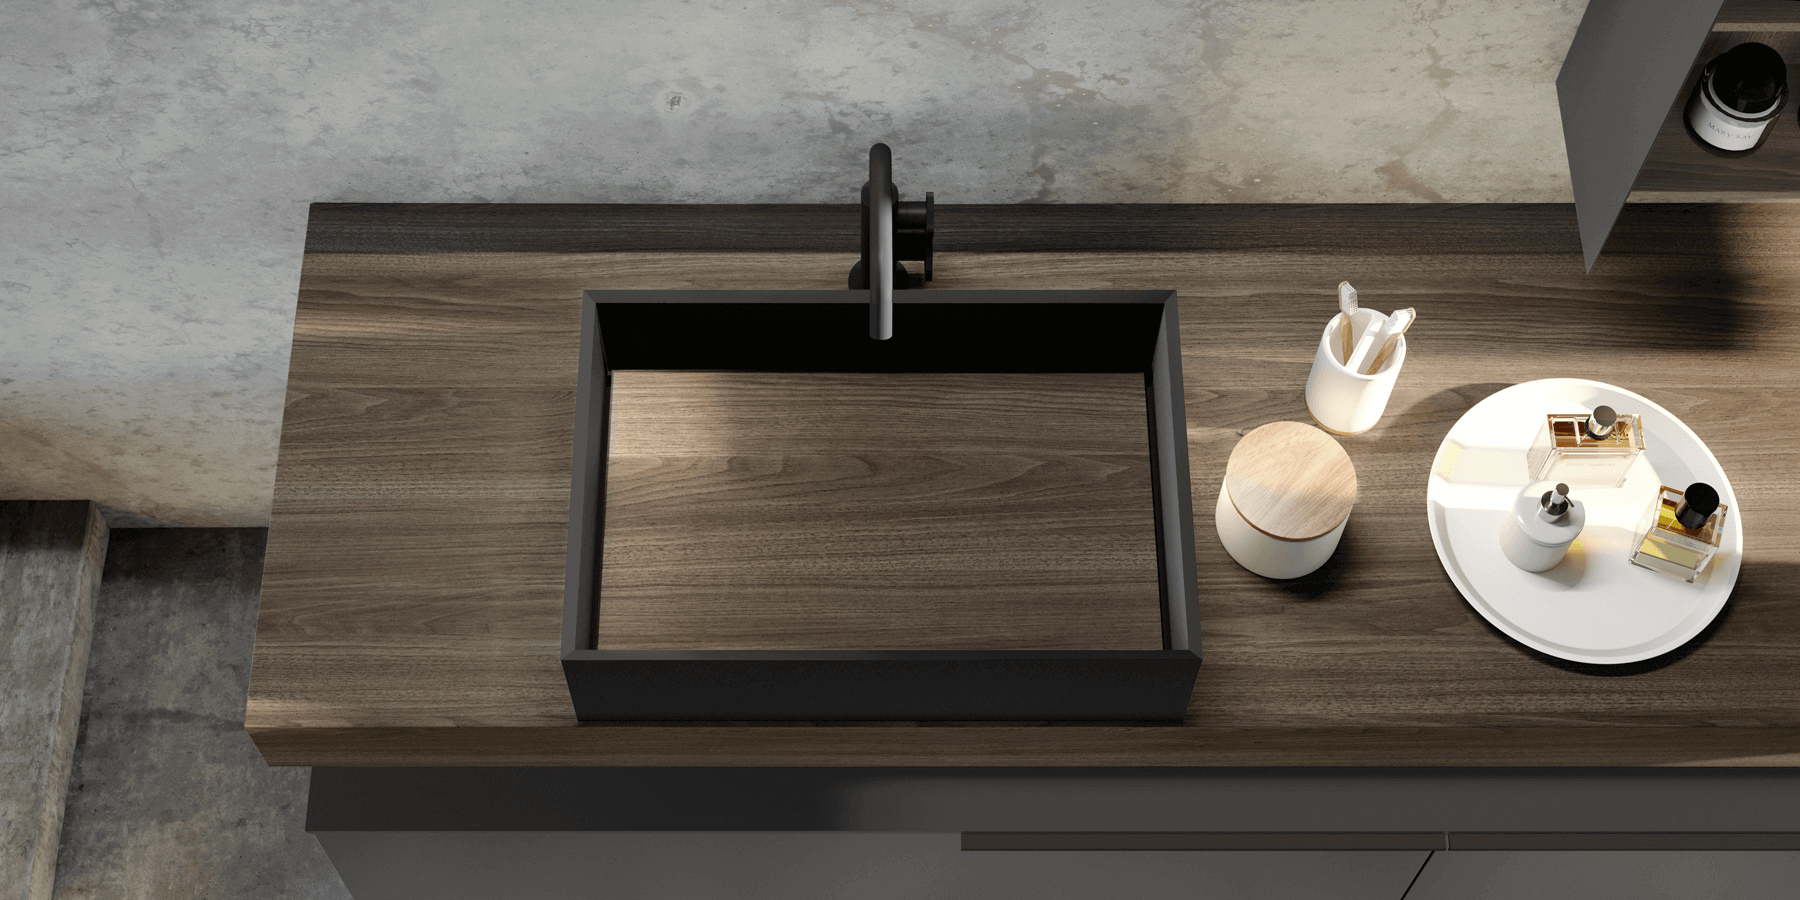 Wood-look countertop with black vessel sink